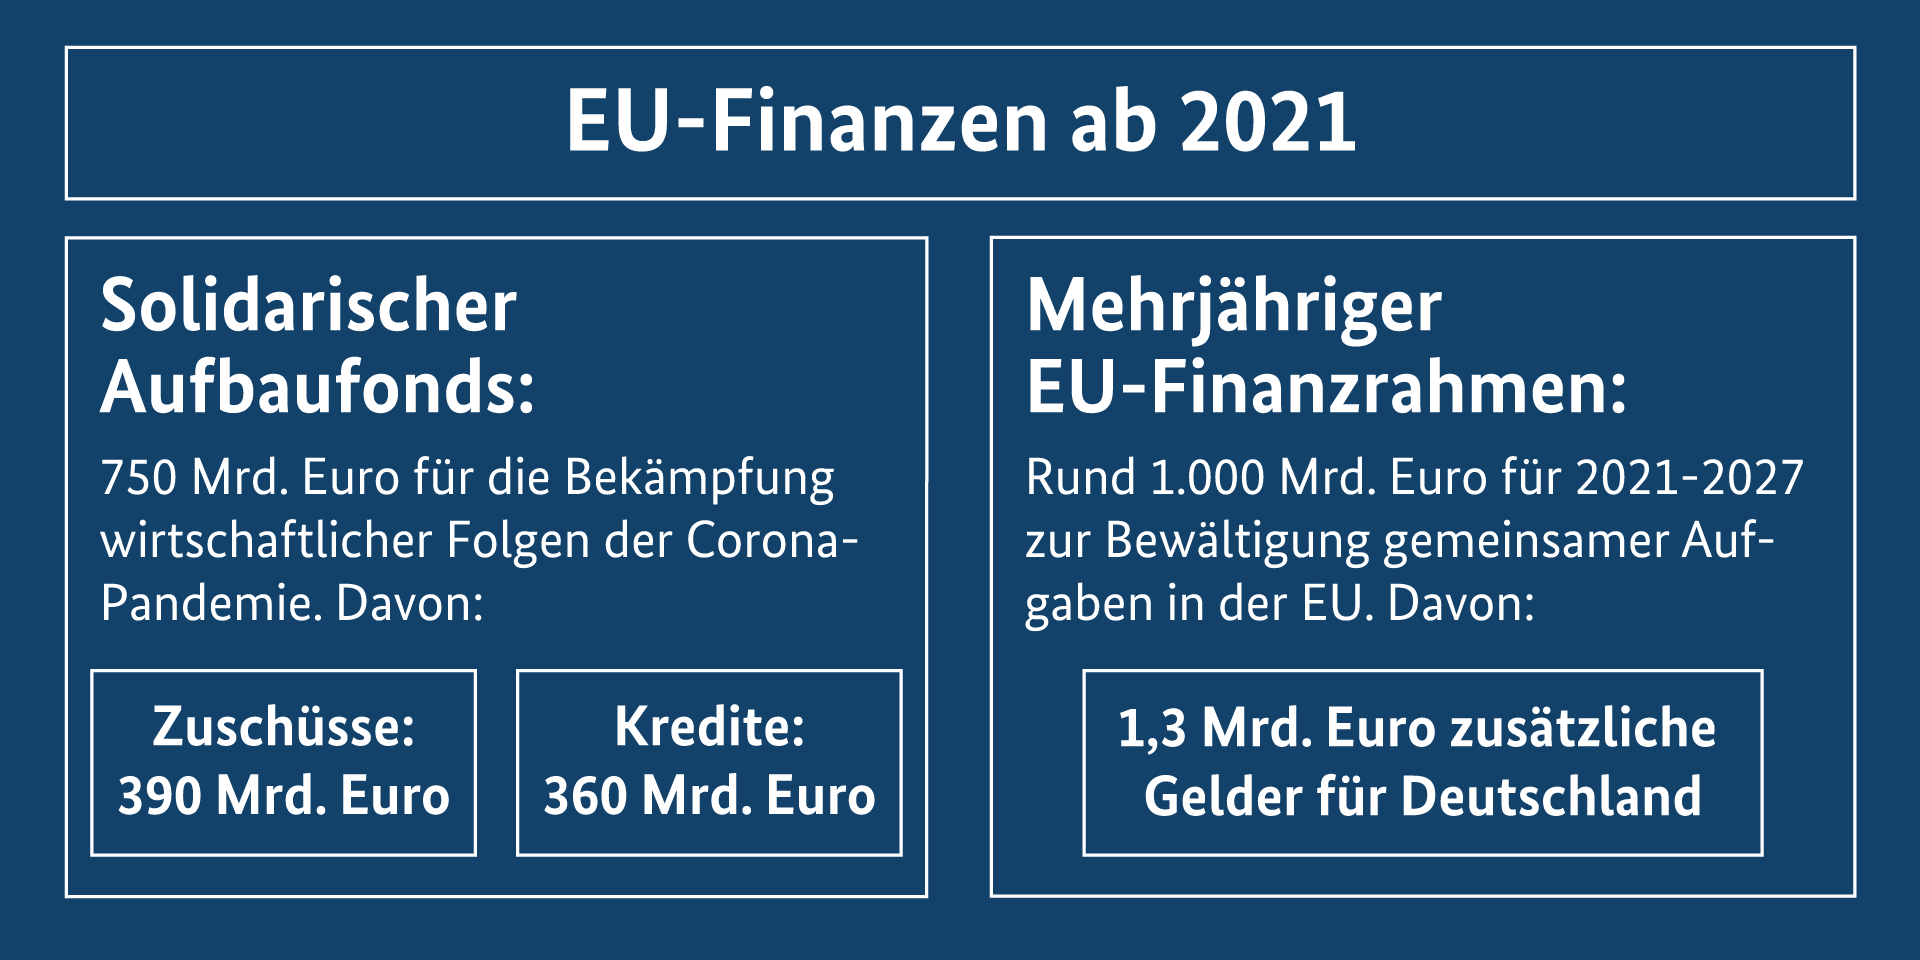 Die Grafik zeigt die beiden Hauptergebnisse des Europäischen Rats: Die Einigung auf den Wiederaufbaufonds und auf den Mehrjährigen Finanzrahmen 2021-2027 (Weitere Beschreibung unterhalb des Bildes ausklappbar als "ausführliche Beschreibung")